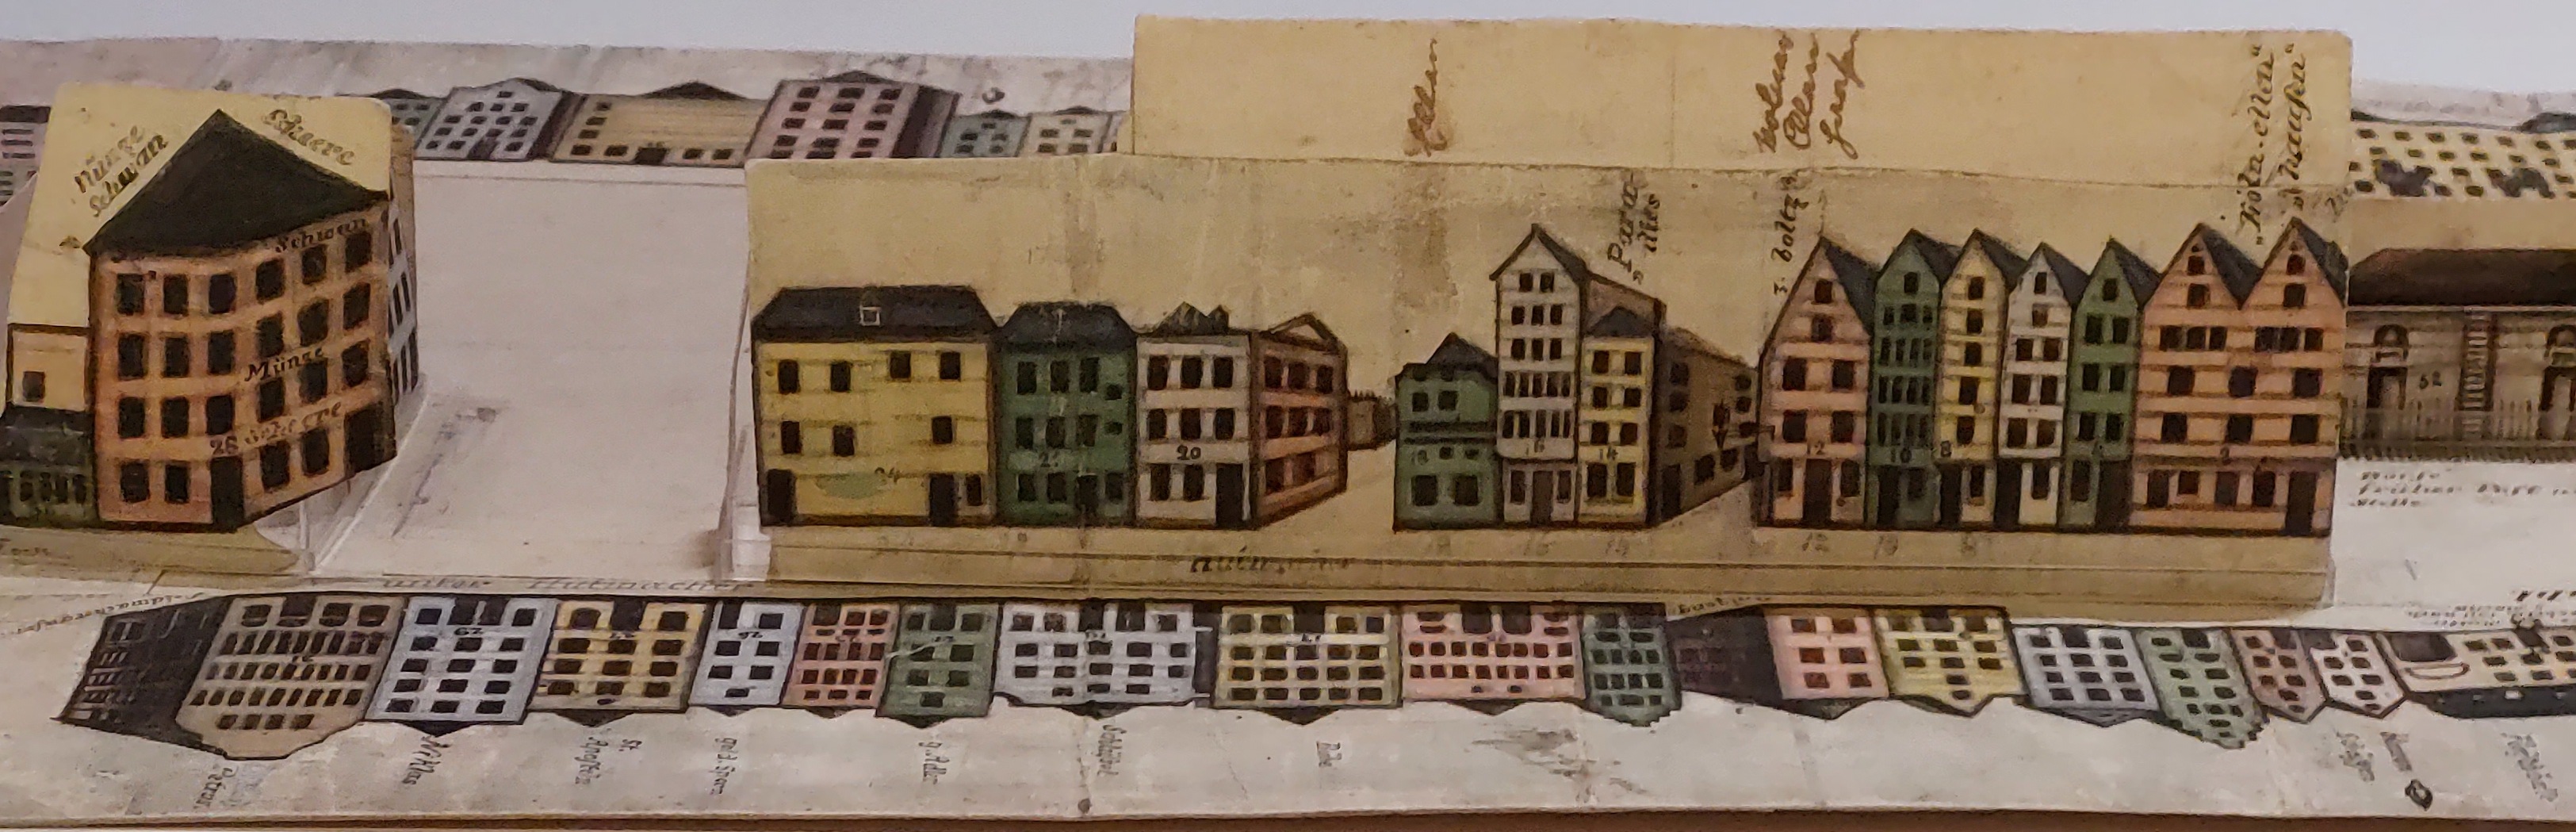 Der Heumarkt gezeichnet von Franz Anton Kreuter in der Ausstellung "M'r well en neu Stadt baue".